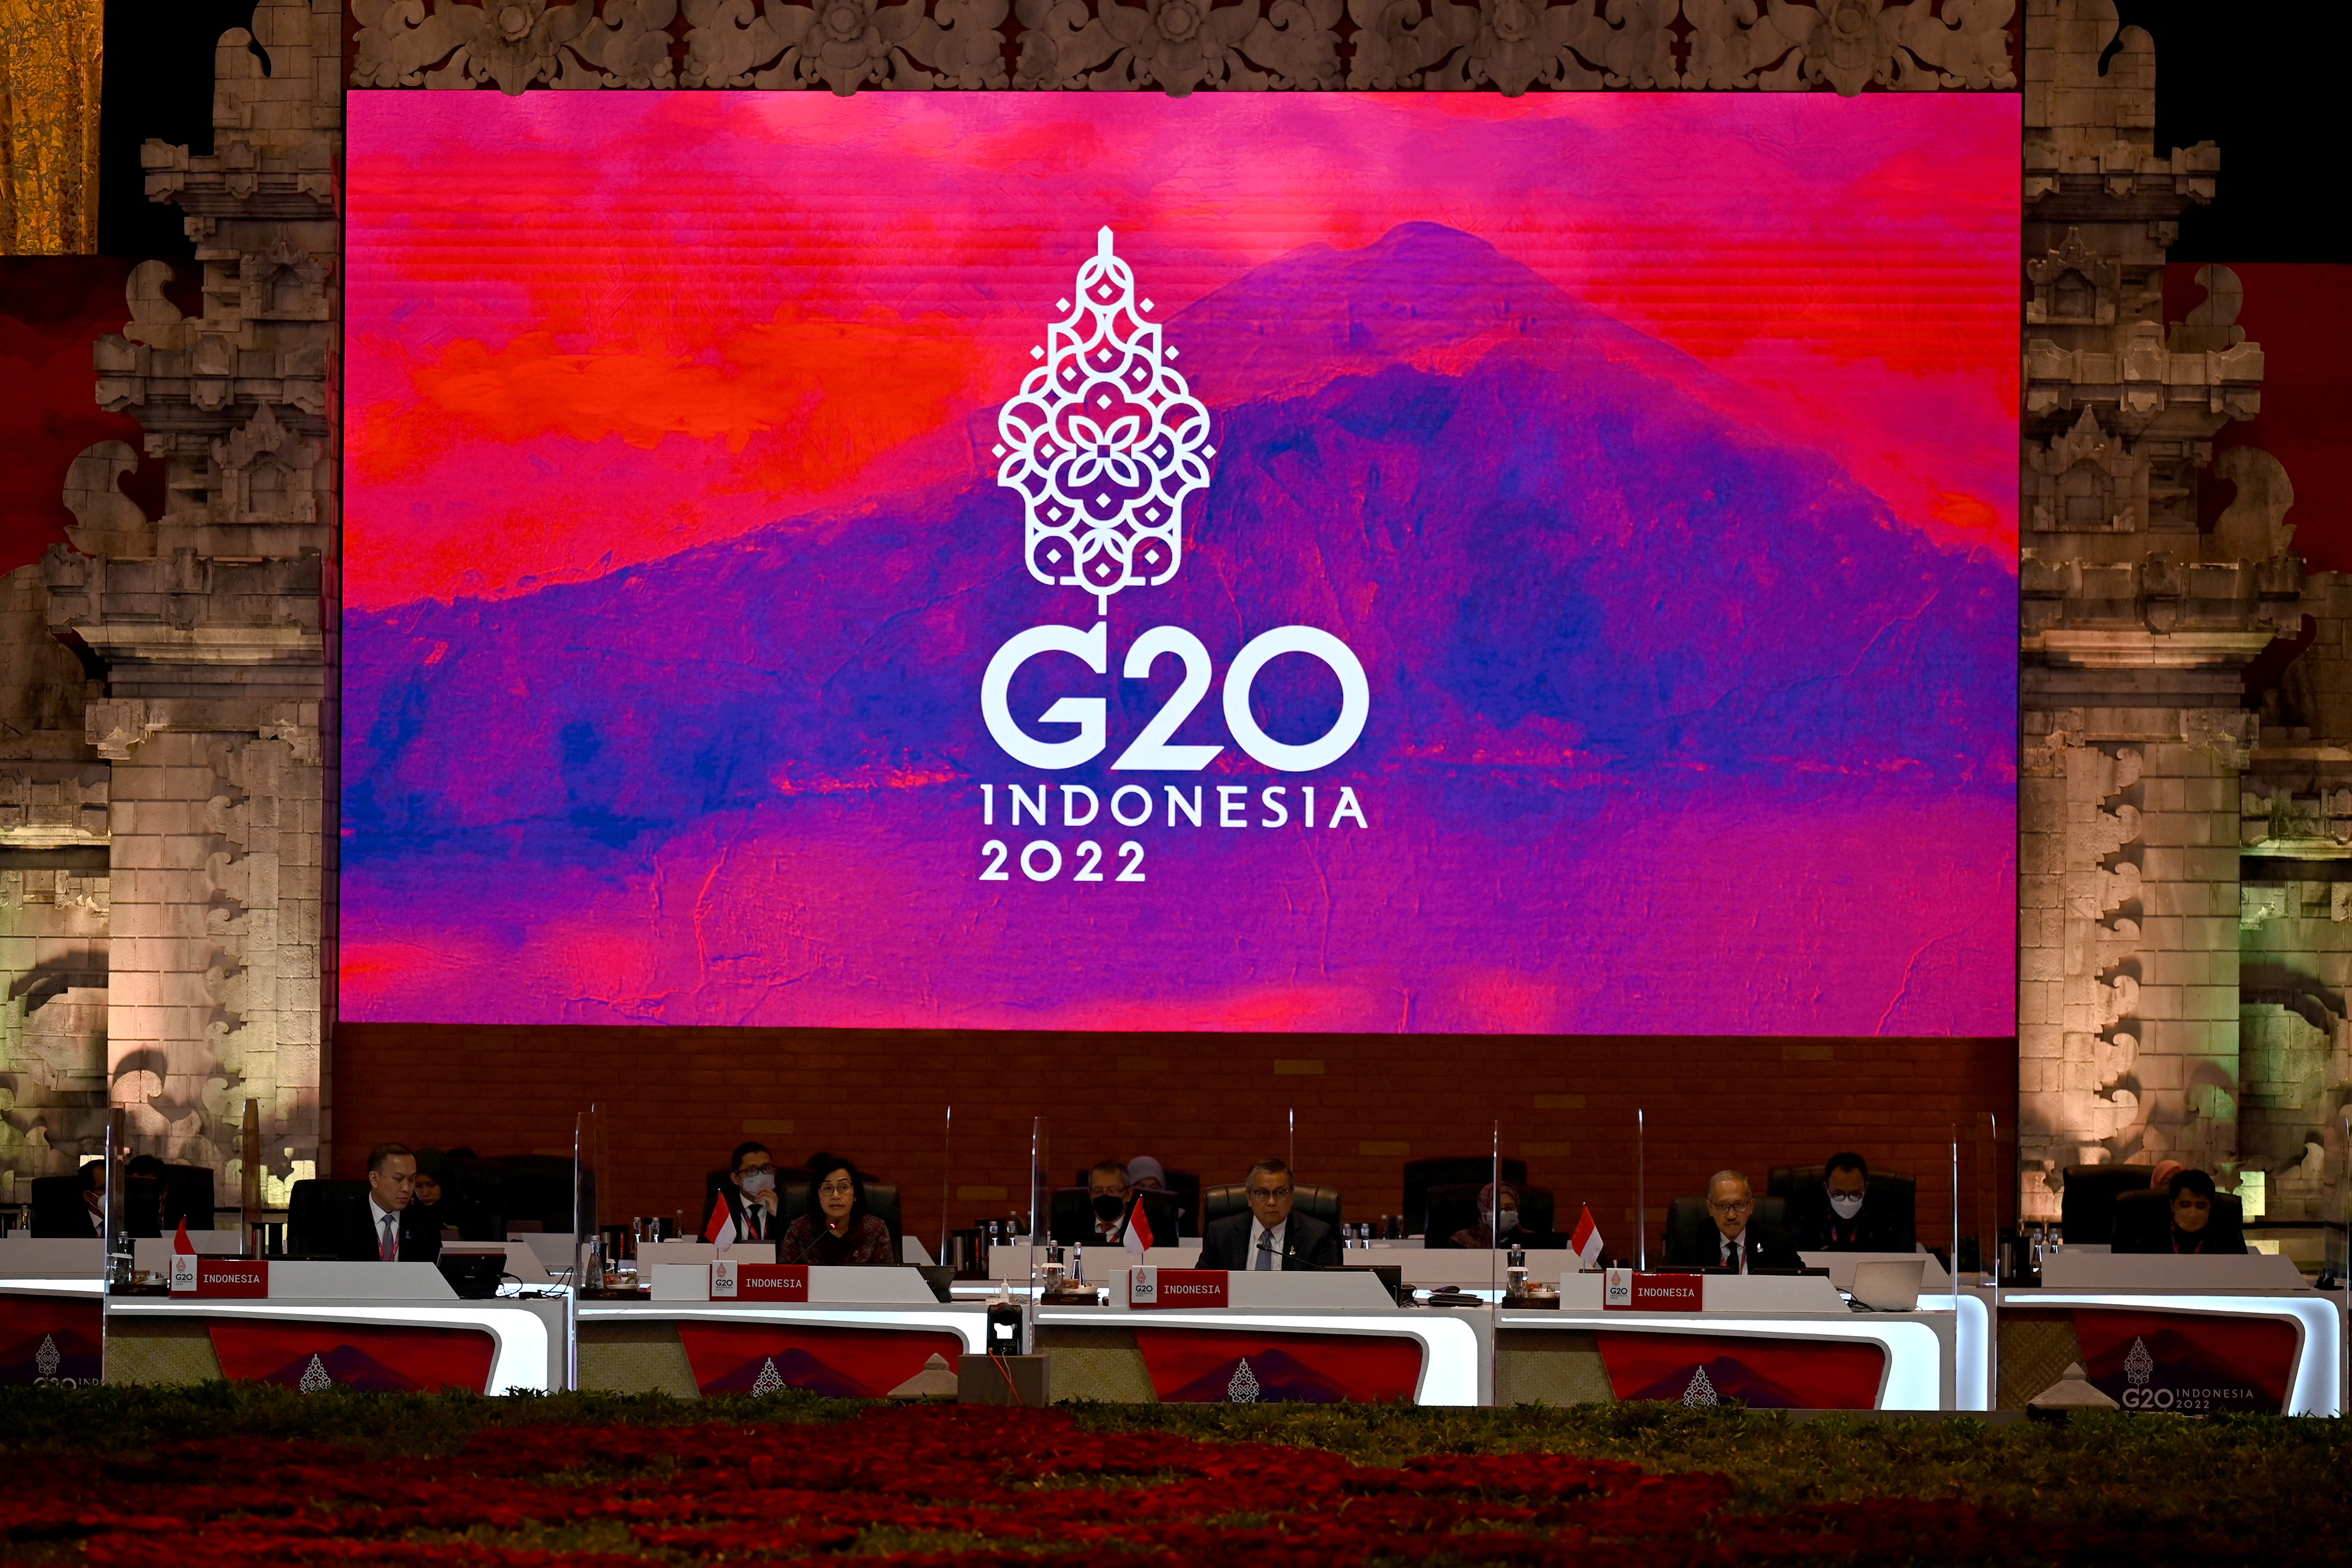 Rusia y China confirmaron su asistencia a la cumbre del G20 pese a las tensiones con EEUU y otros miembros del bloque